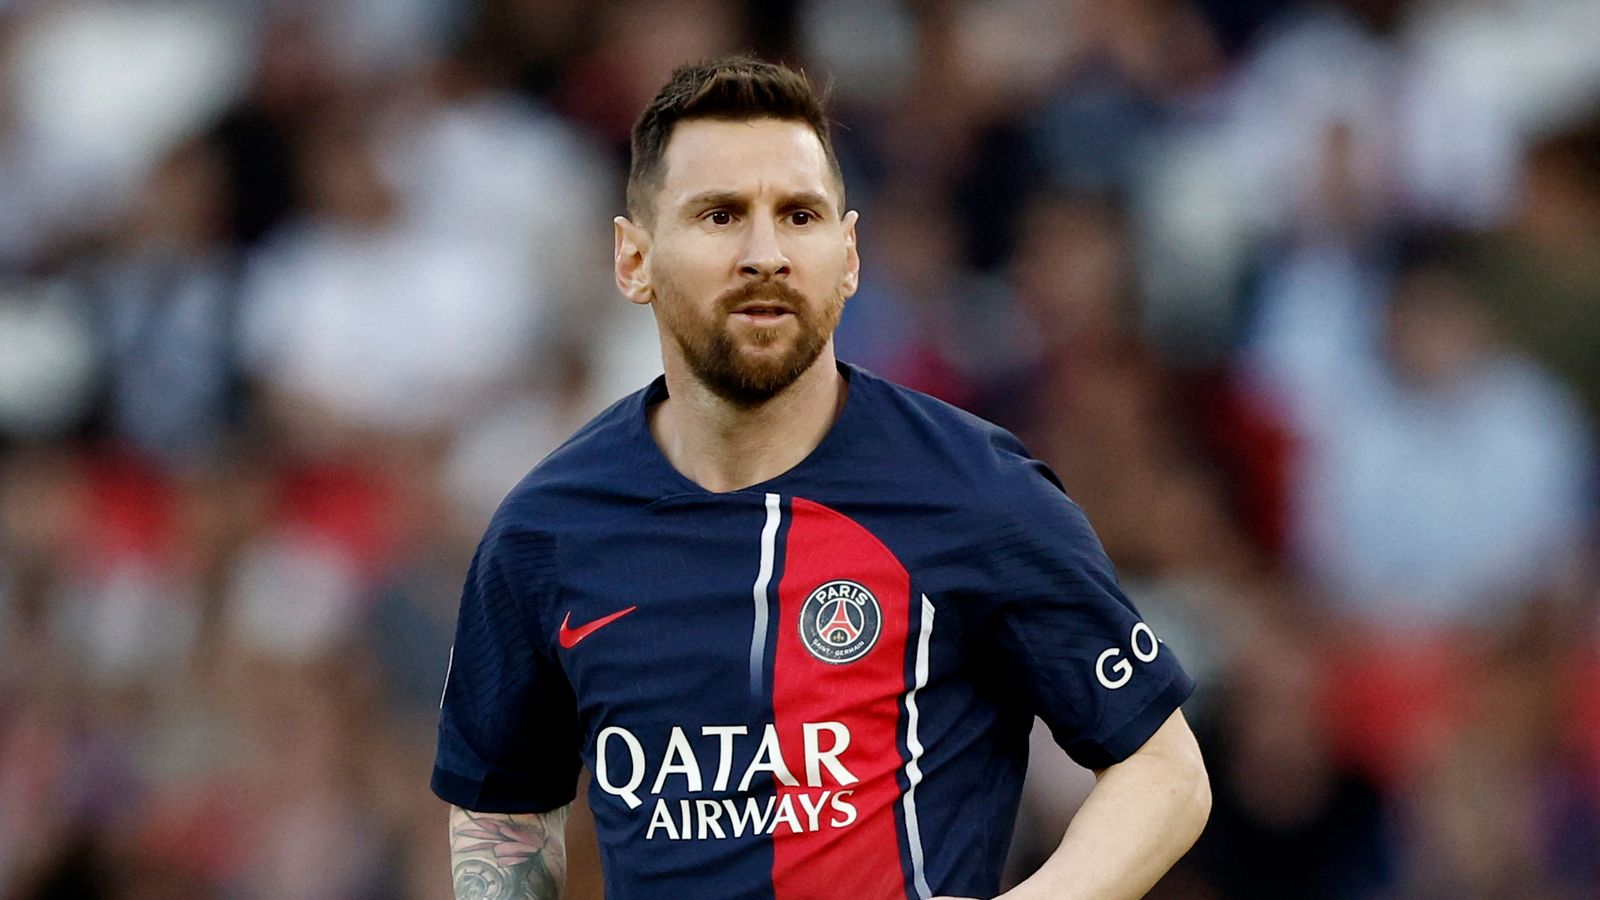 Le dernier match de Lionel Messi avec le PSG se termine par une défaite – alors que la spéculation monte sur son prochain coup |  nouvelles du monde